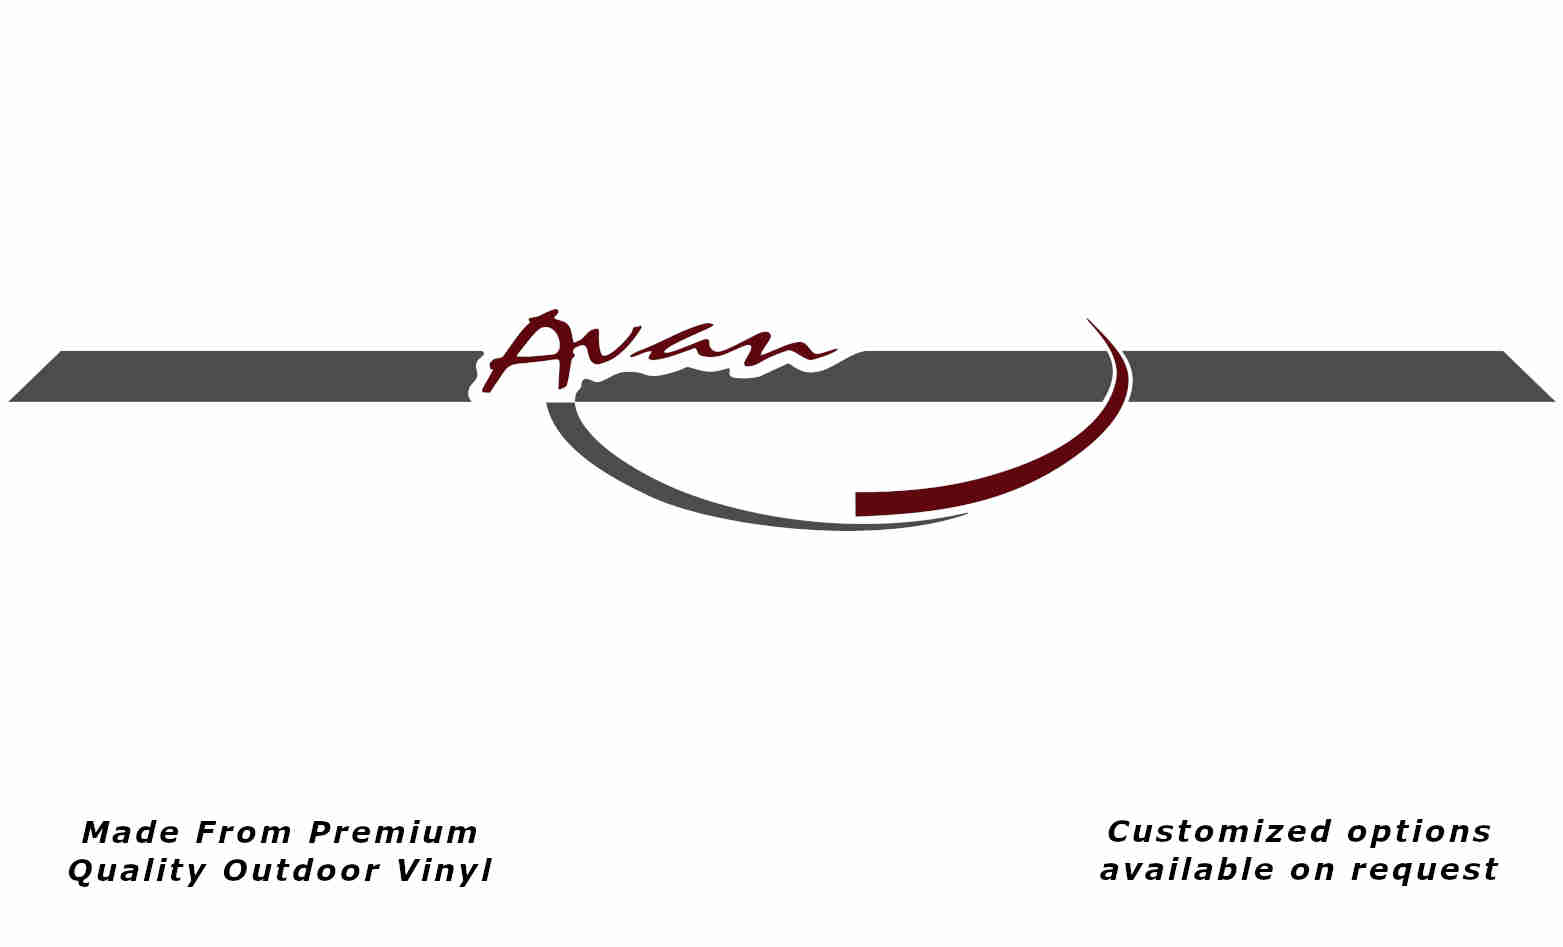 Avan 2002-2003 front caravan replacement vinyl decal sticker in dark grey and purple red.